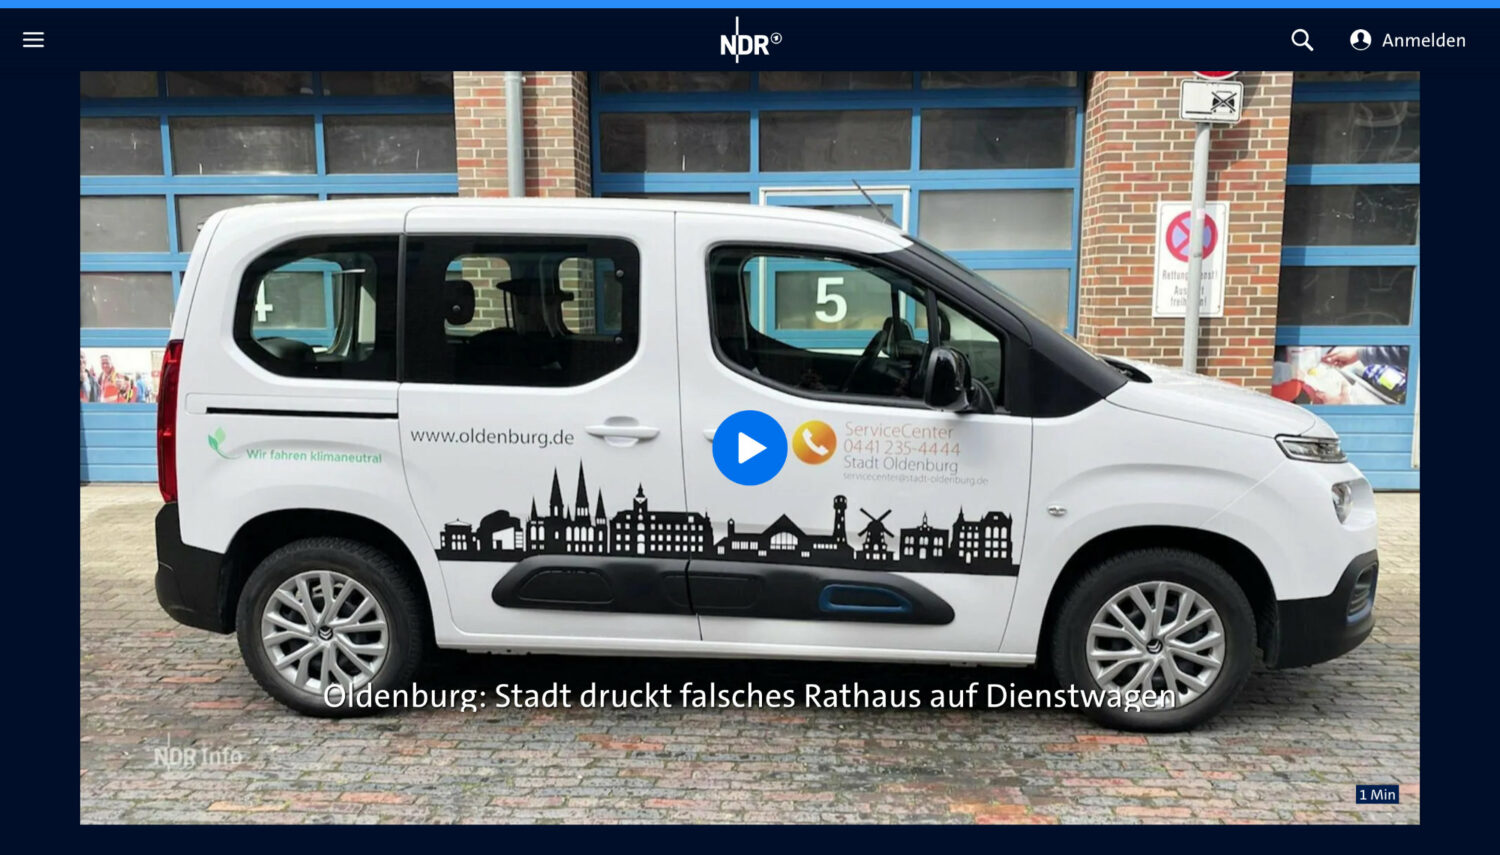 NDR-Bericht: Oldenburg Silhouette auf Fahrzeug